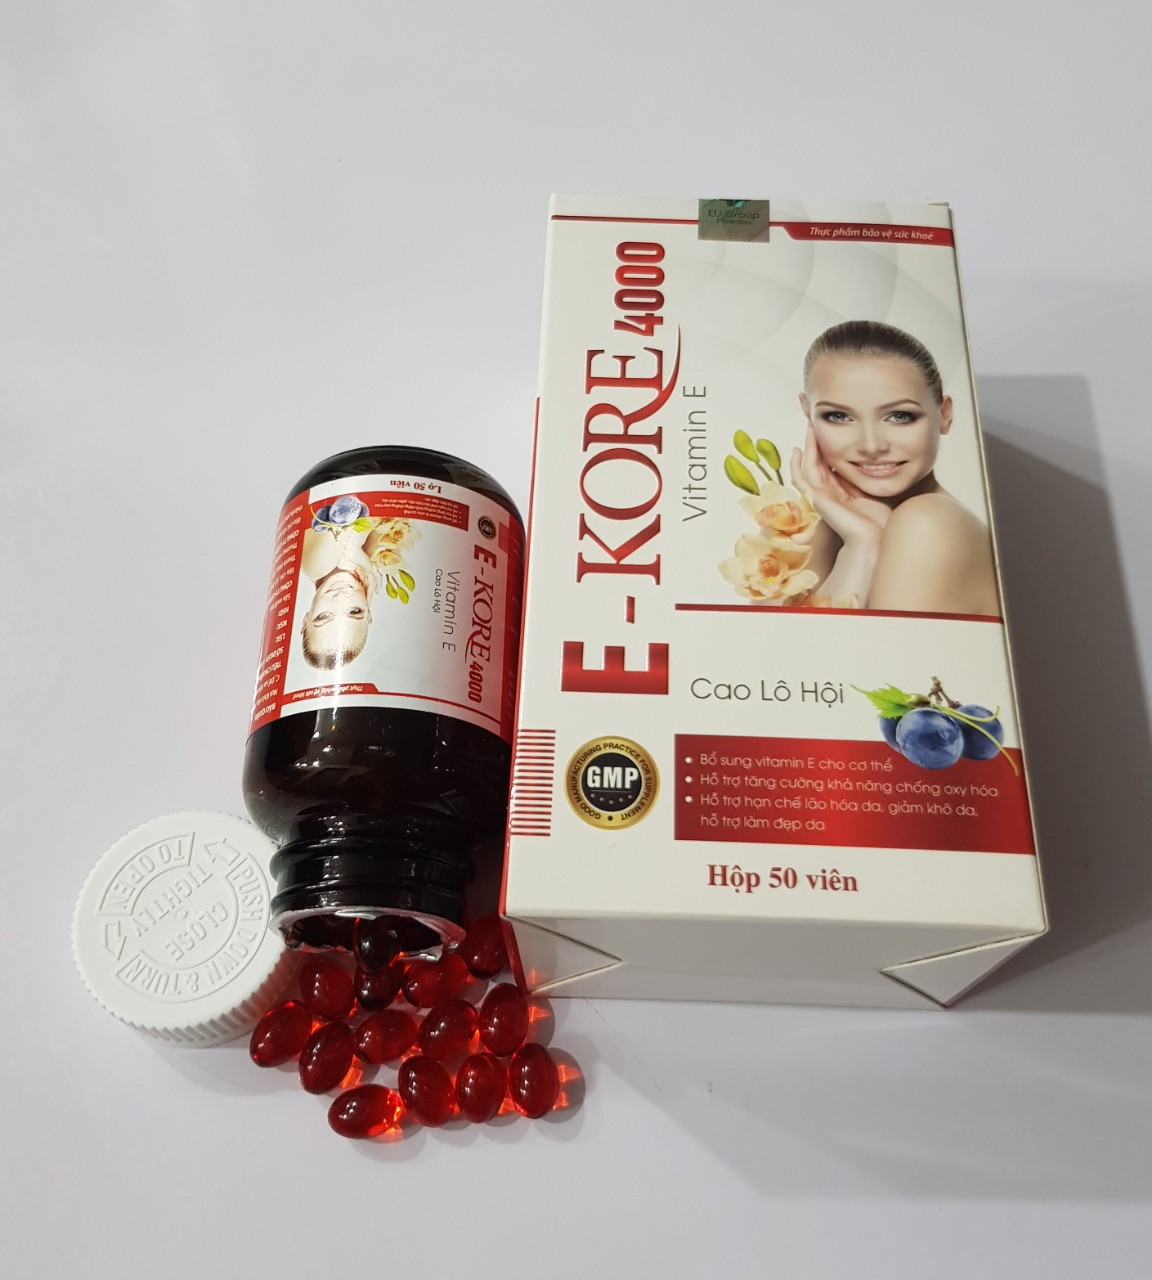 Viên Vitamin E - Kore 4000: Bổ sung vitamin E, hỗ trợ làm đẹp da,giảm khô da,hạn chế lão hoá da.